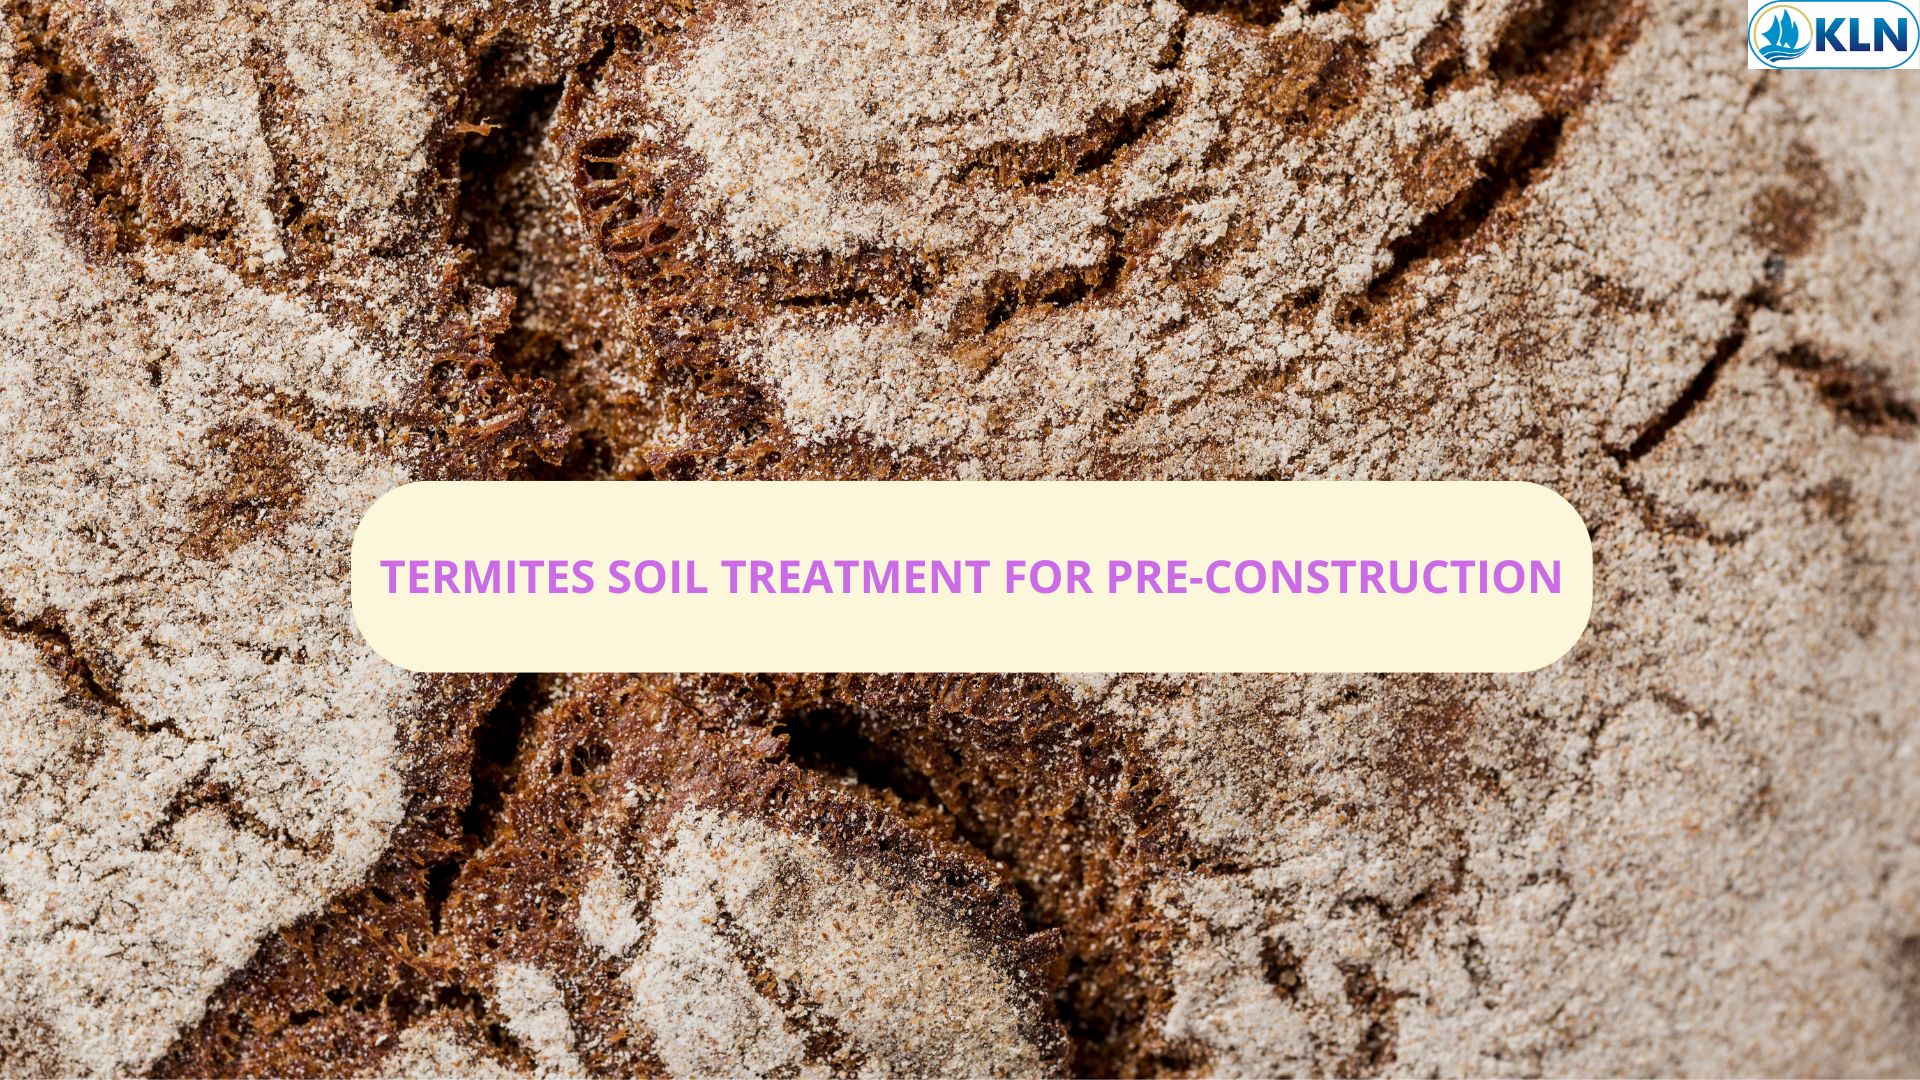 TERMITES SOIL TREATMENT FOR PRE-CONSTRUCTION